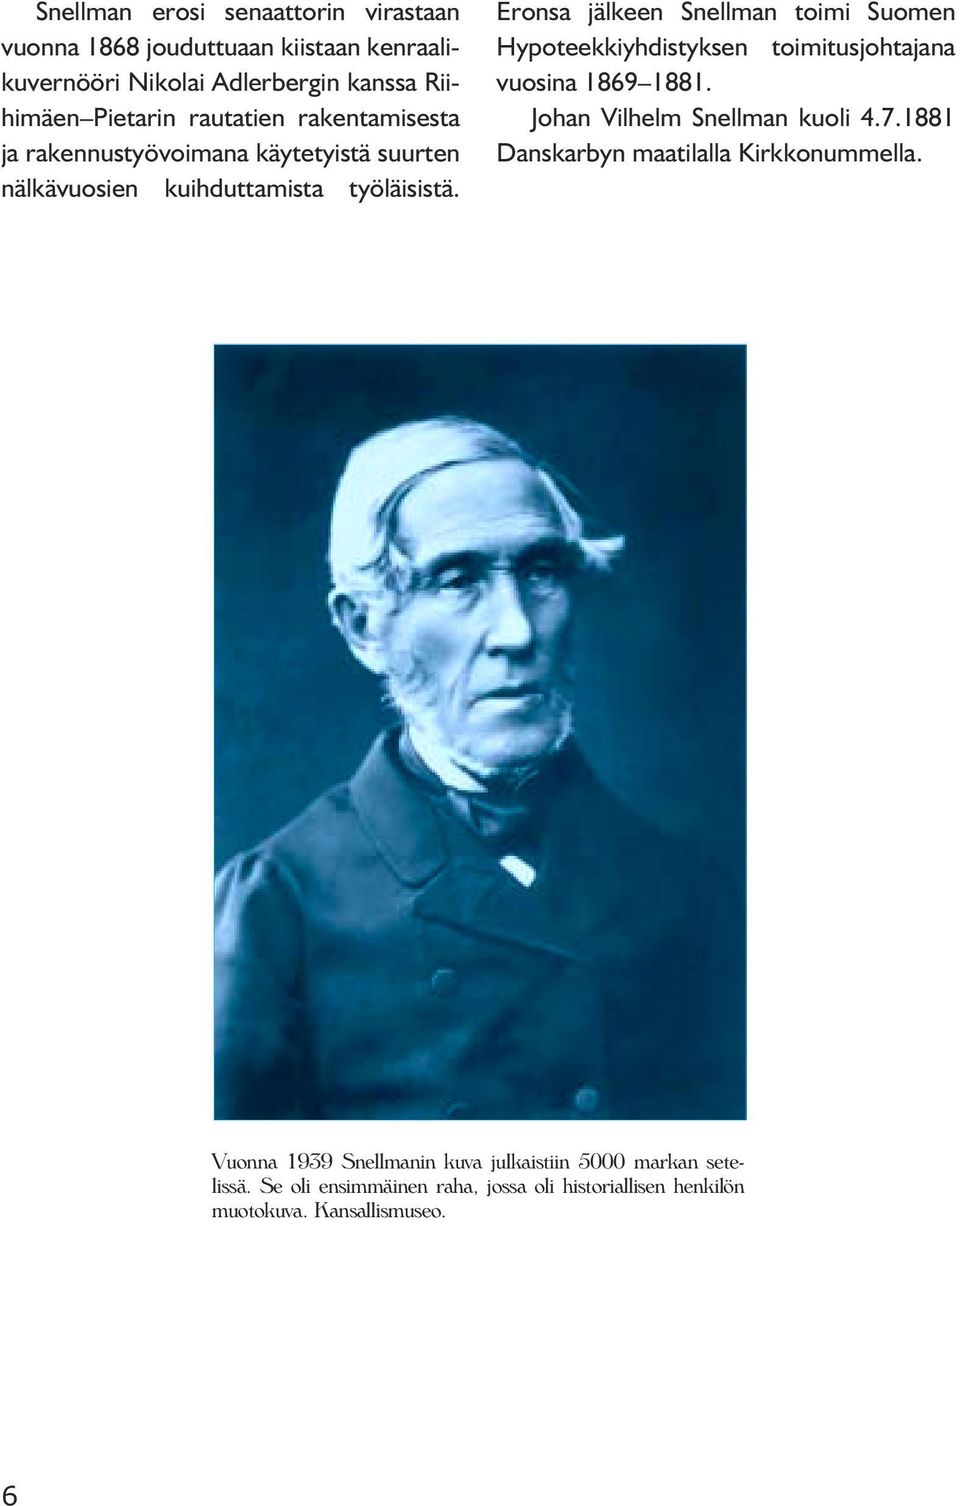 Eronsa jälkeen Snellman toimi Suomen Hypoteekkiyhdistyksen toimitusjohtajana vuosina 1869 1881. Johan Vilhelm Snellman kuoli 4.7.